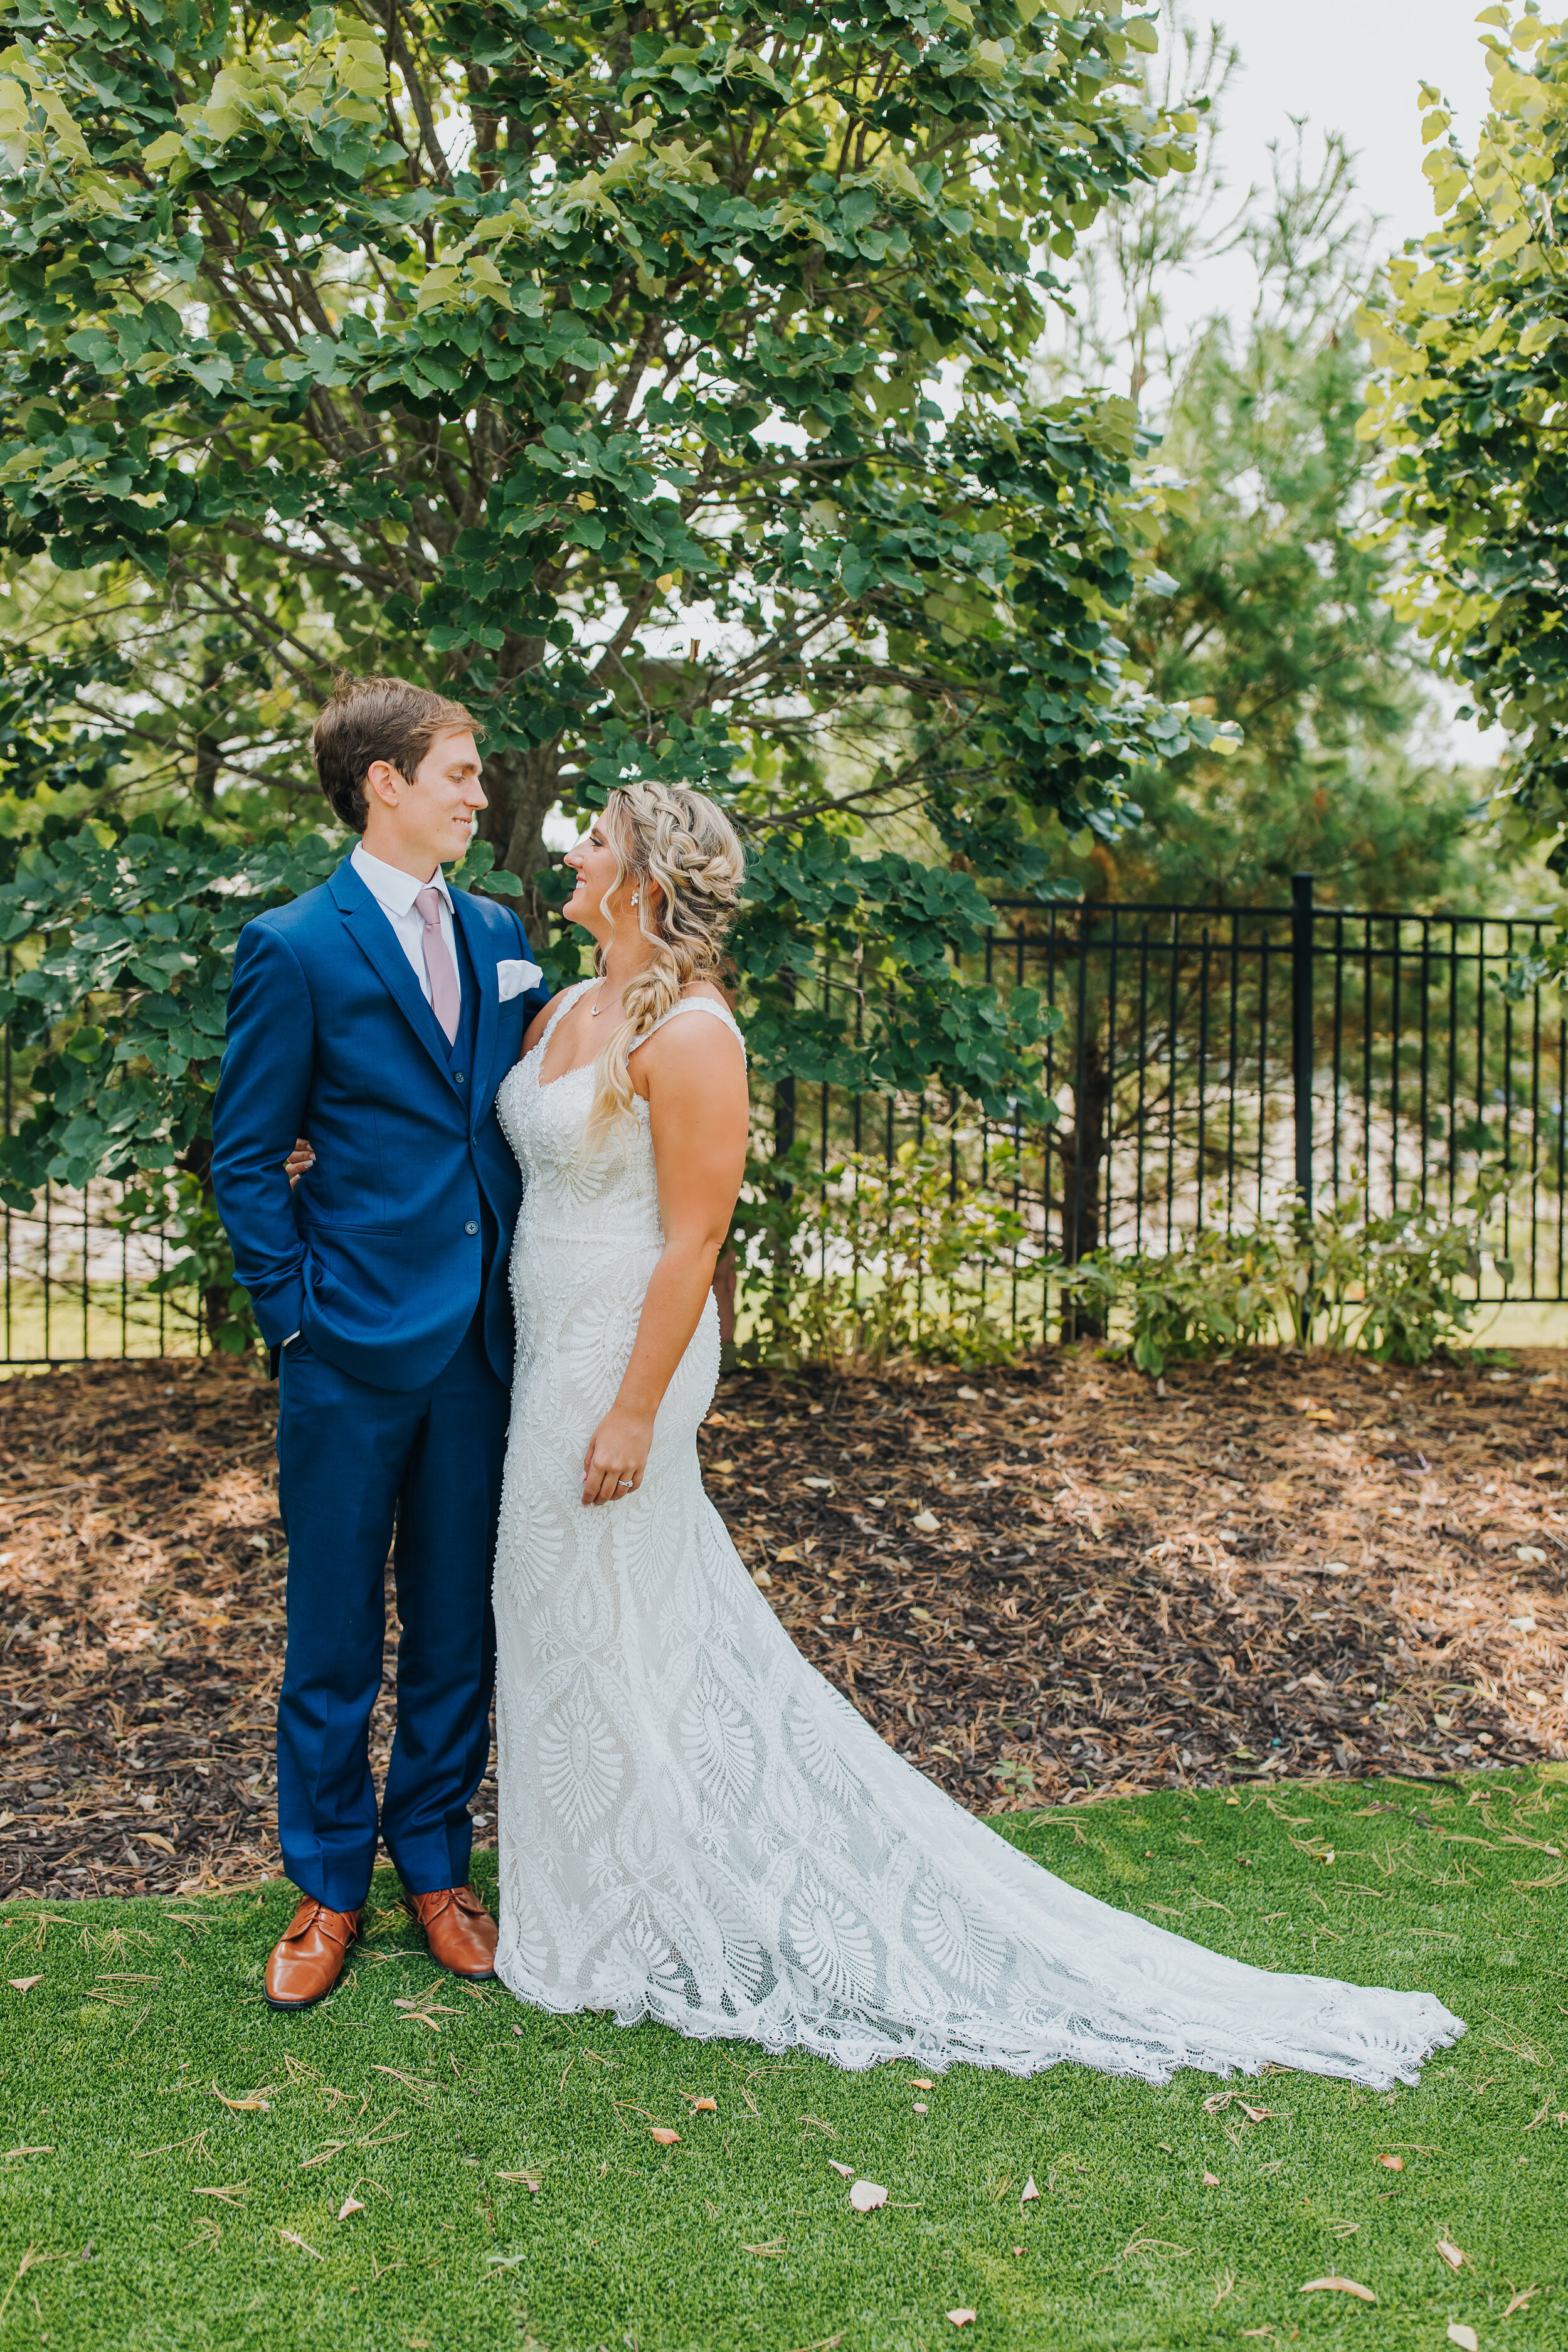 Ashton & Dan - Married - Nathaniel Jensen Photography - Omaha Nebraska Wedding Photographer-126.jpg